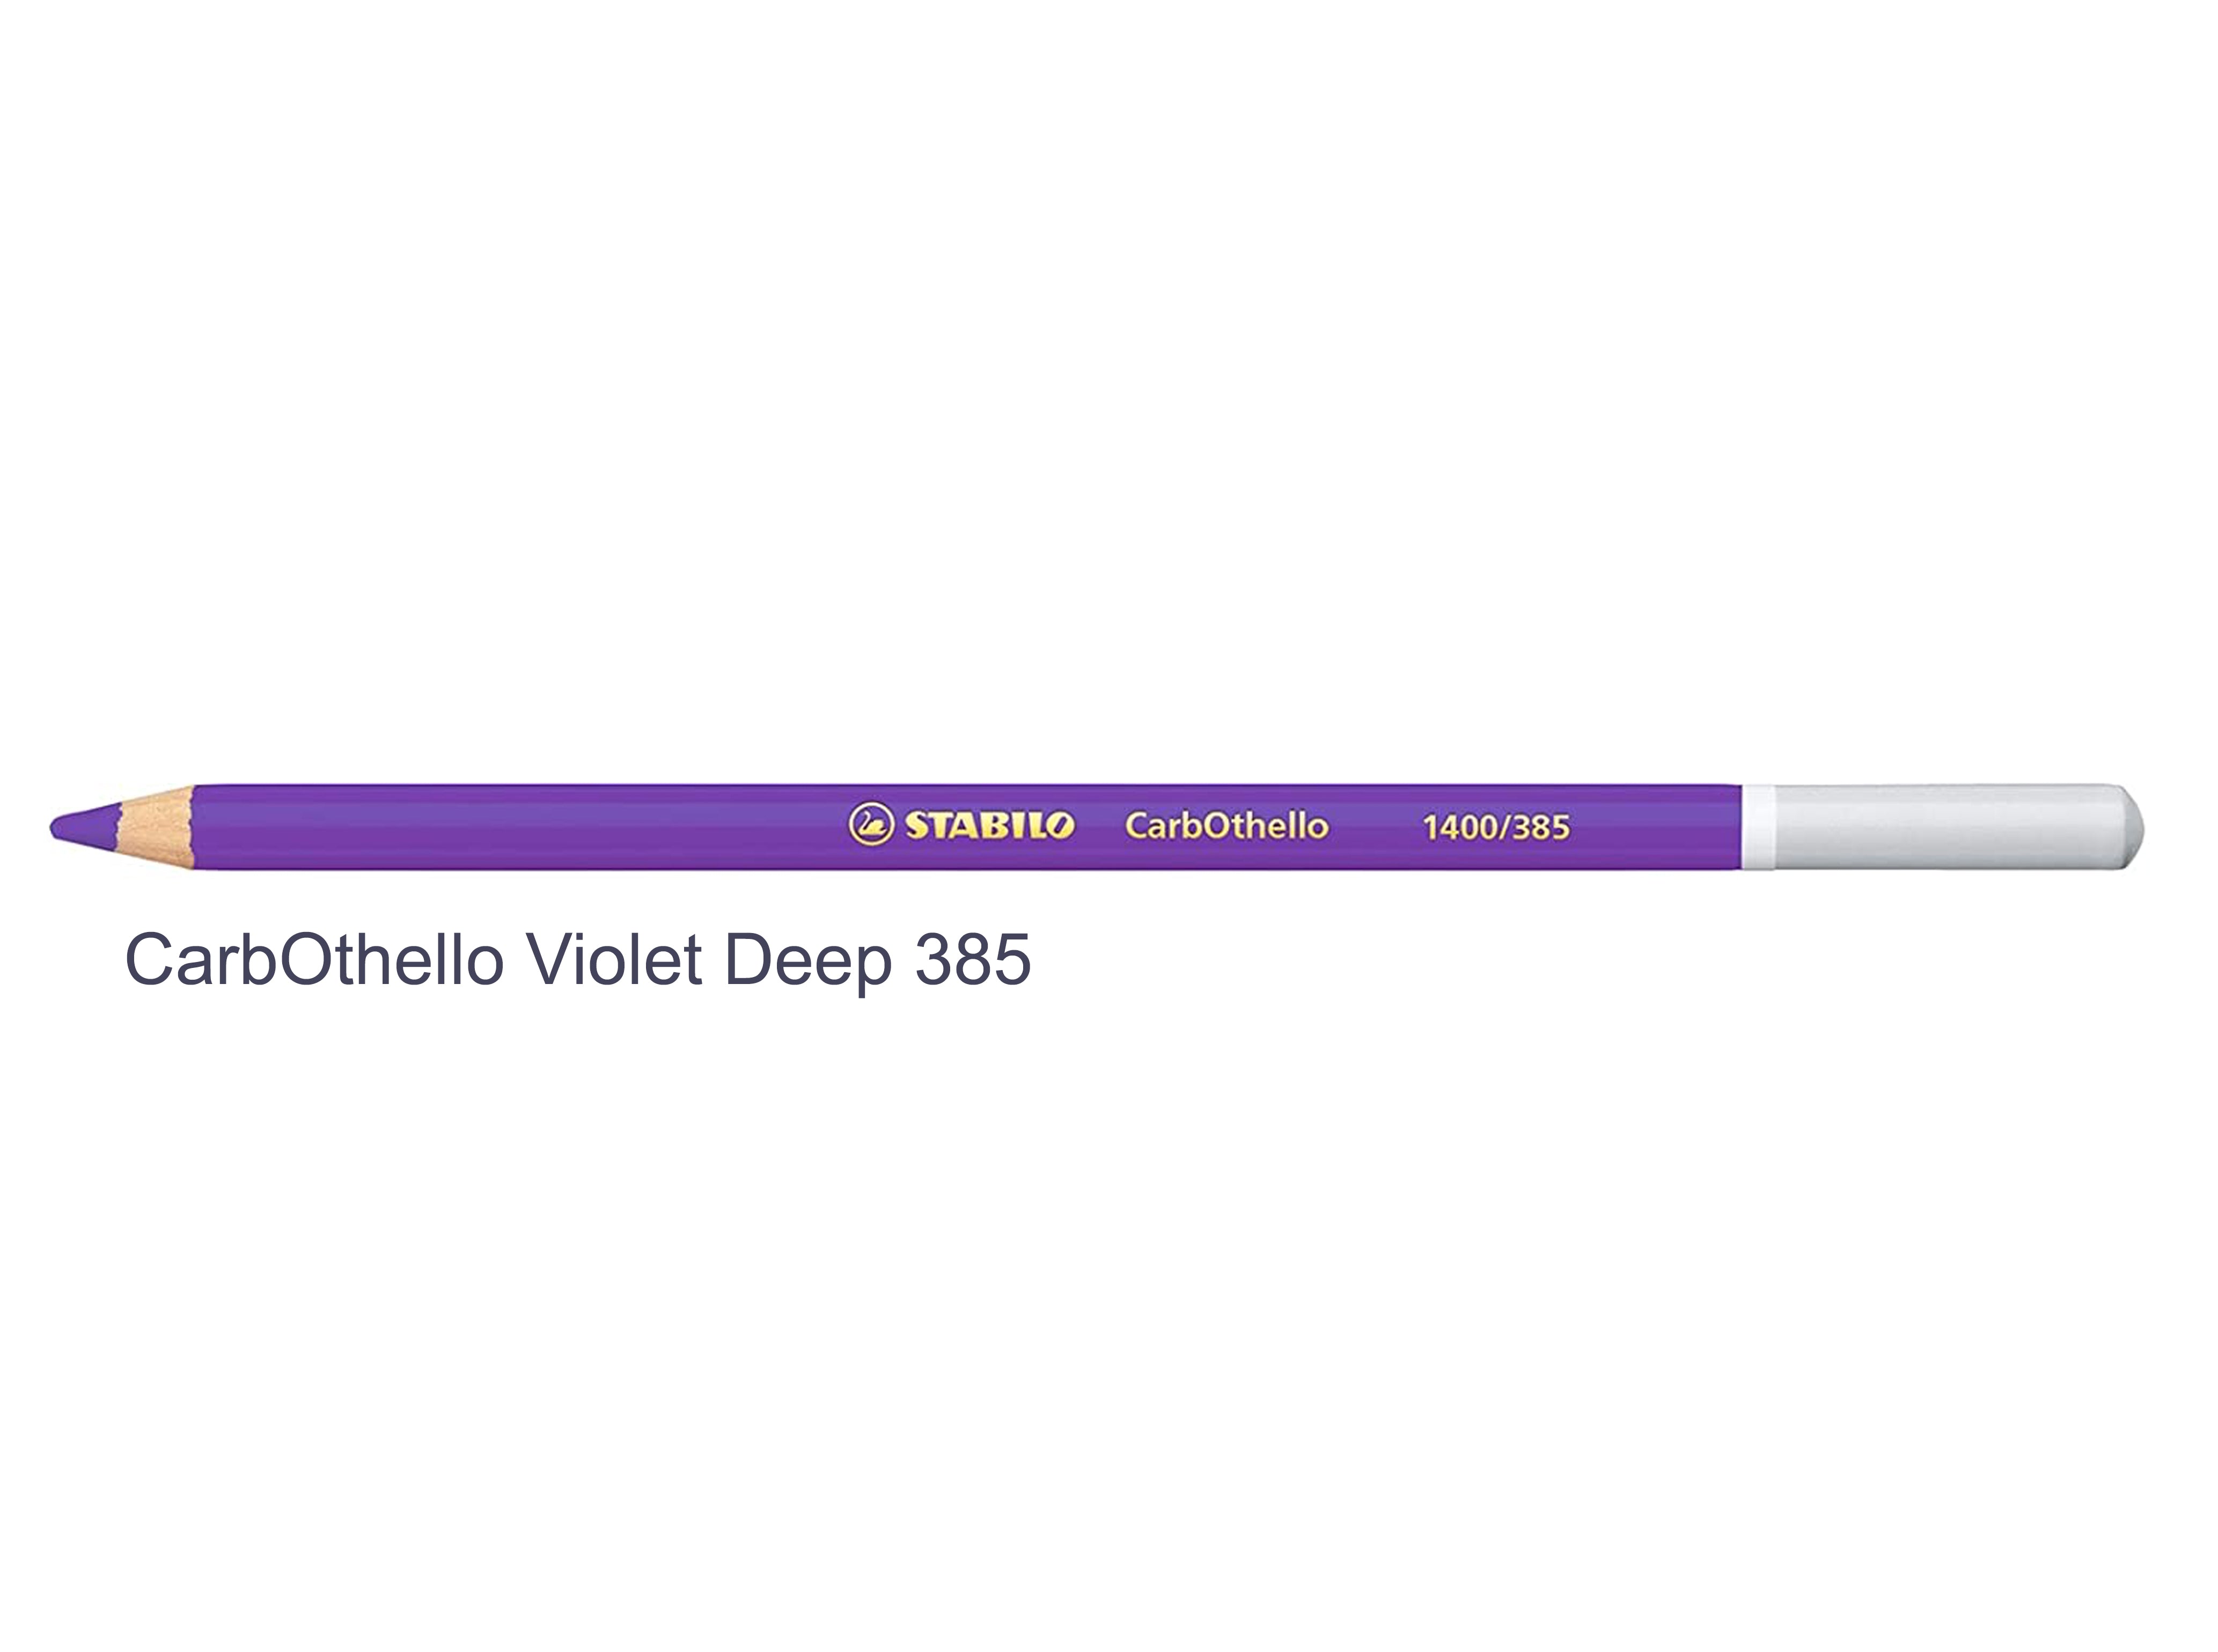 Violet deep 385